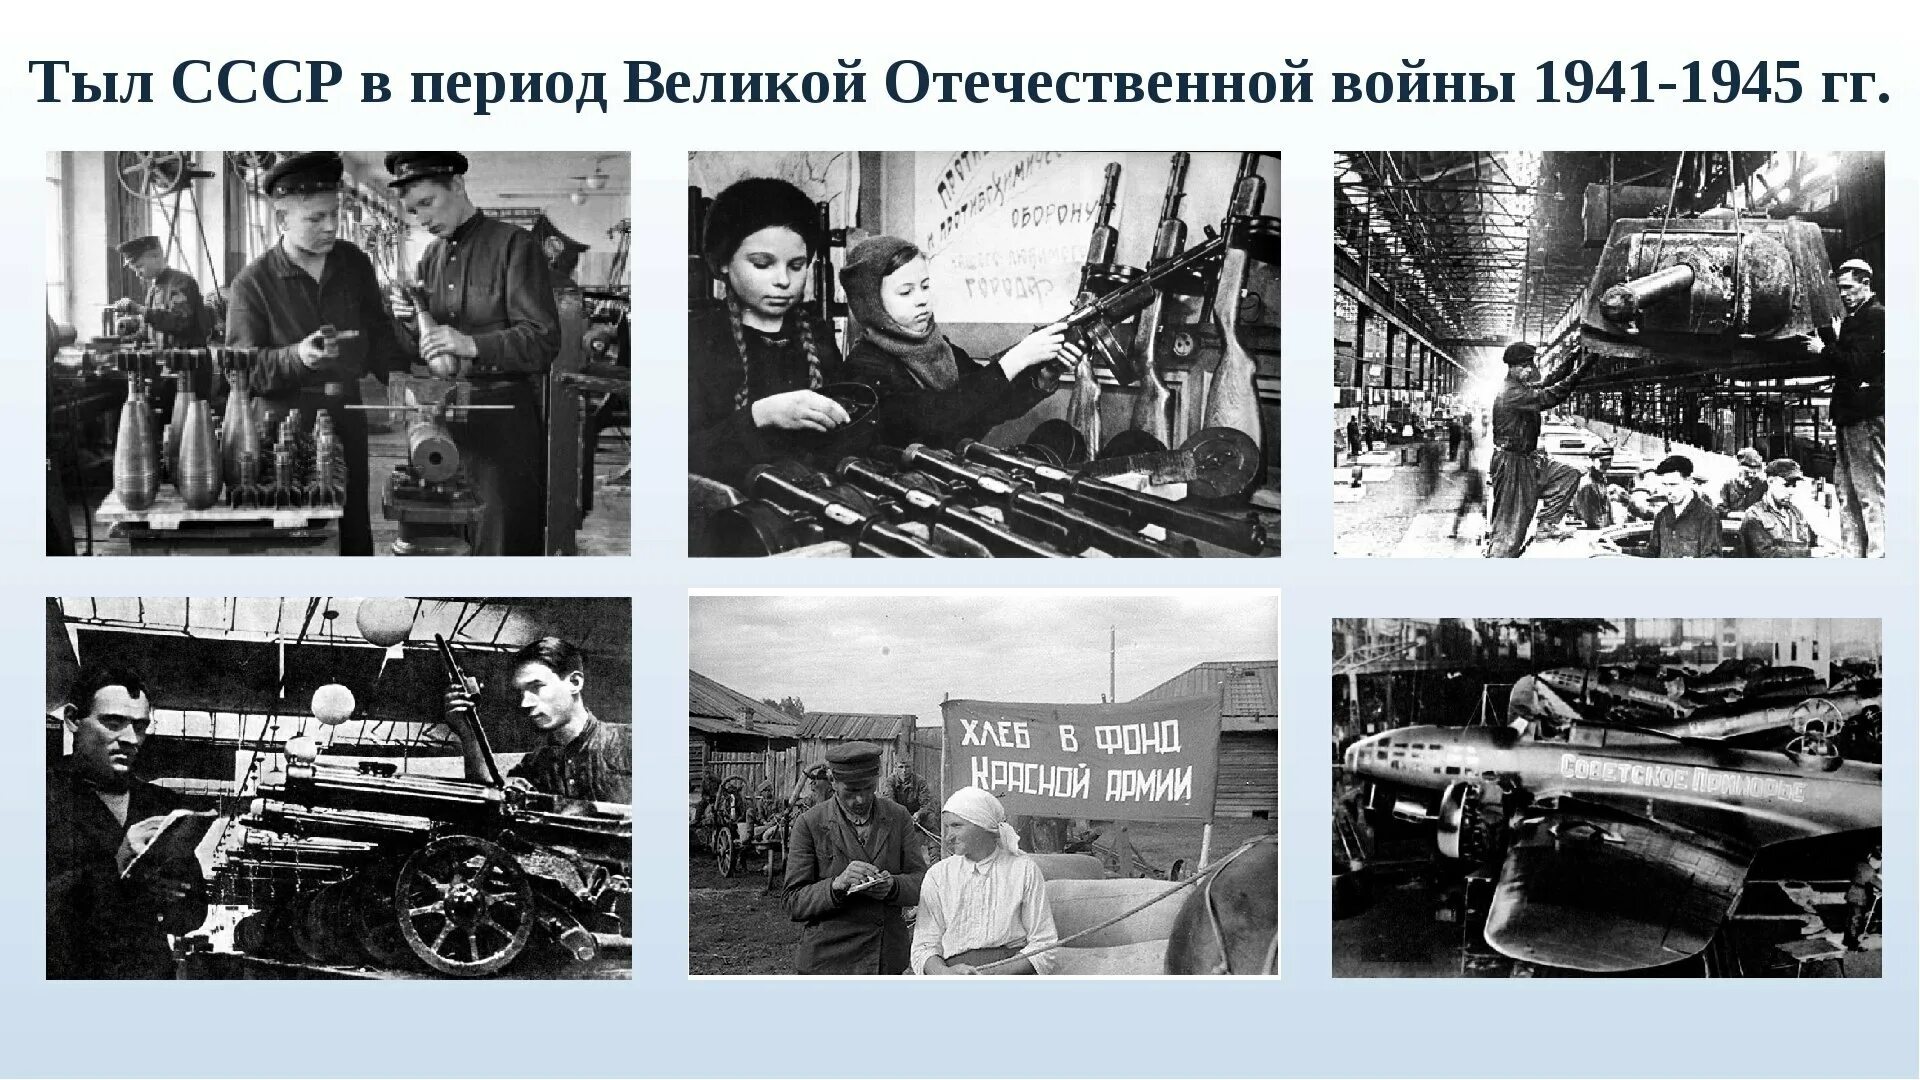 Подвиг тружеников тыла в годы Великой Отечественной войны. Женщины труженицы тыла в годы Великой Отечественной войны.